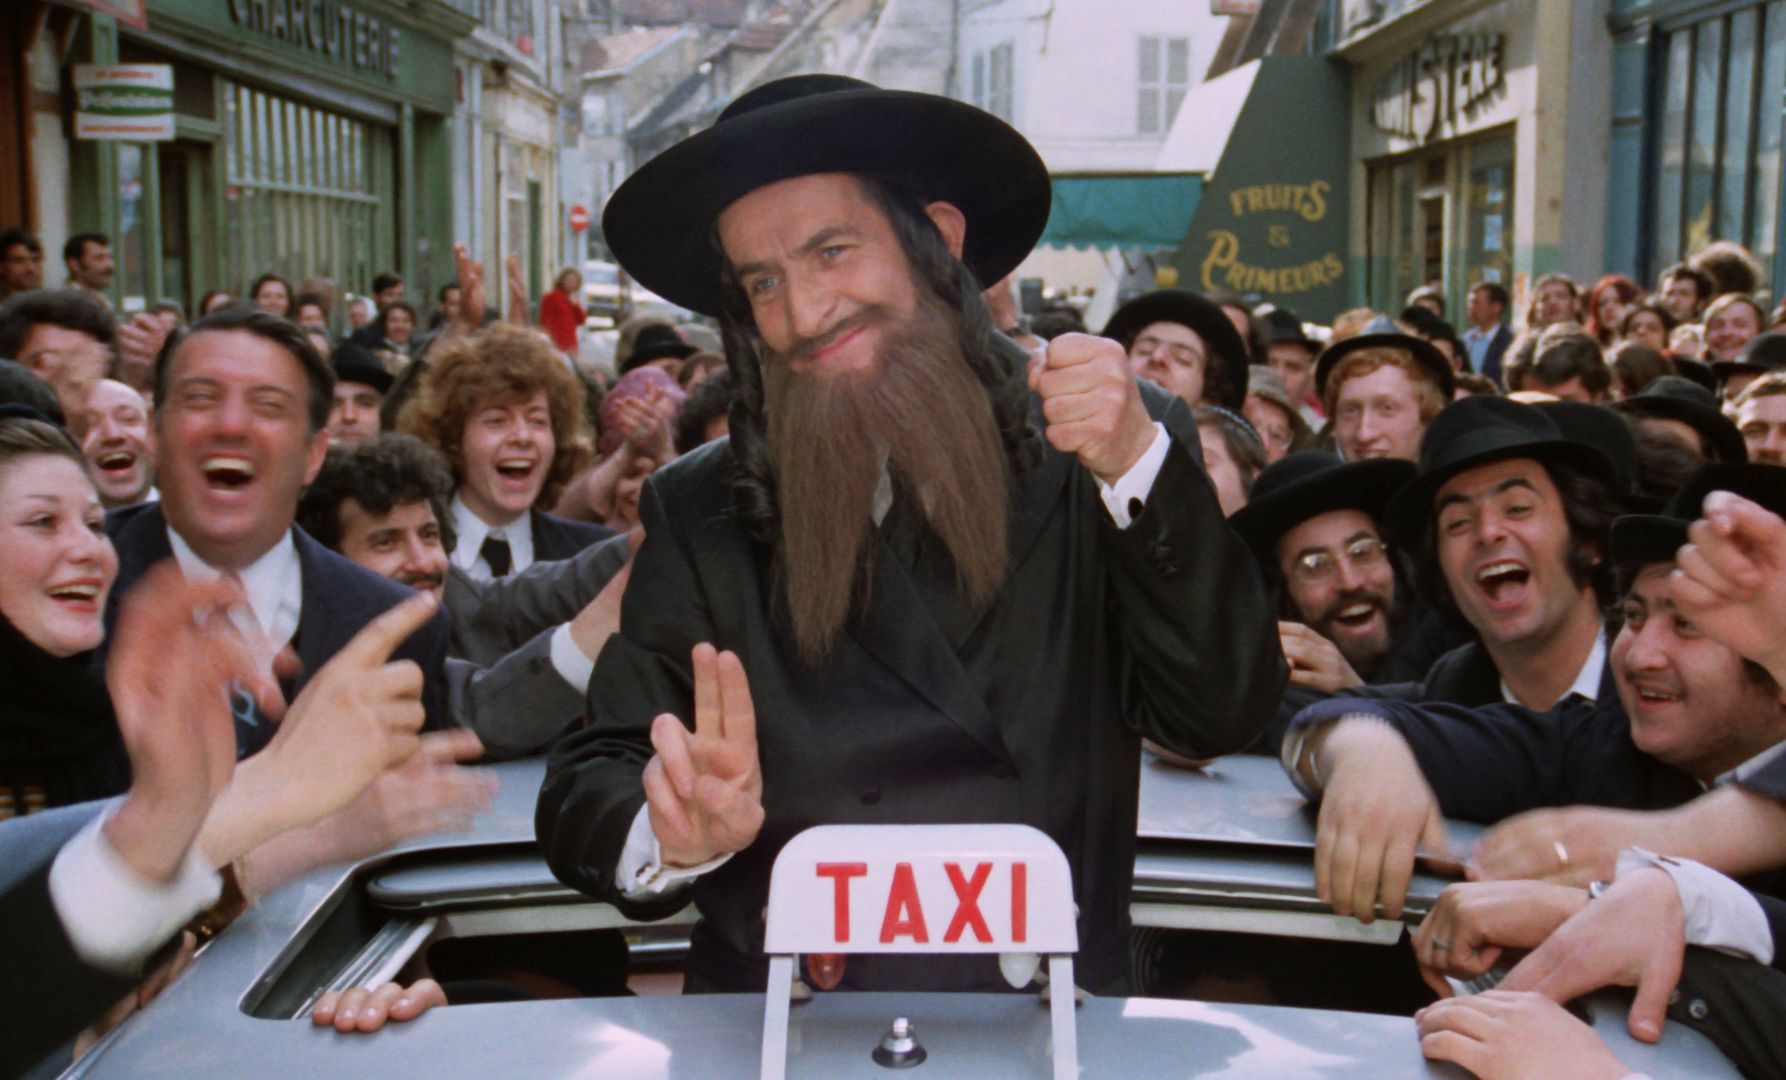 Les Aventures de Rabbi Jacob sur France 2 : le film est sorti dans un contexte tendu